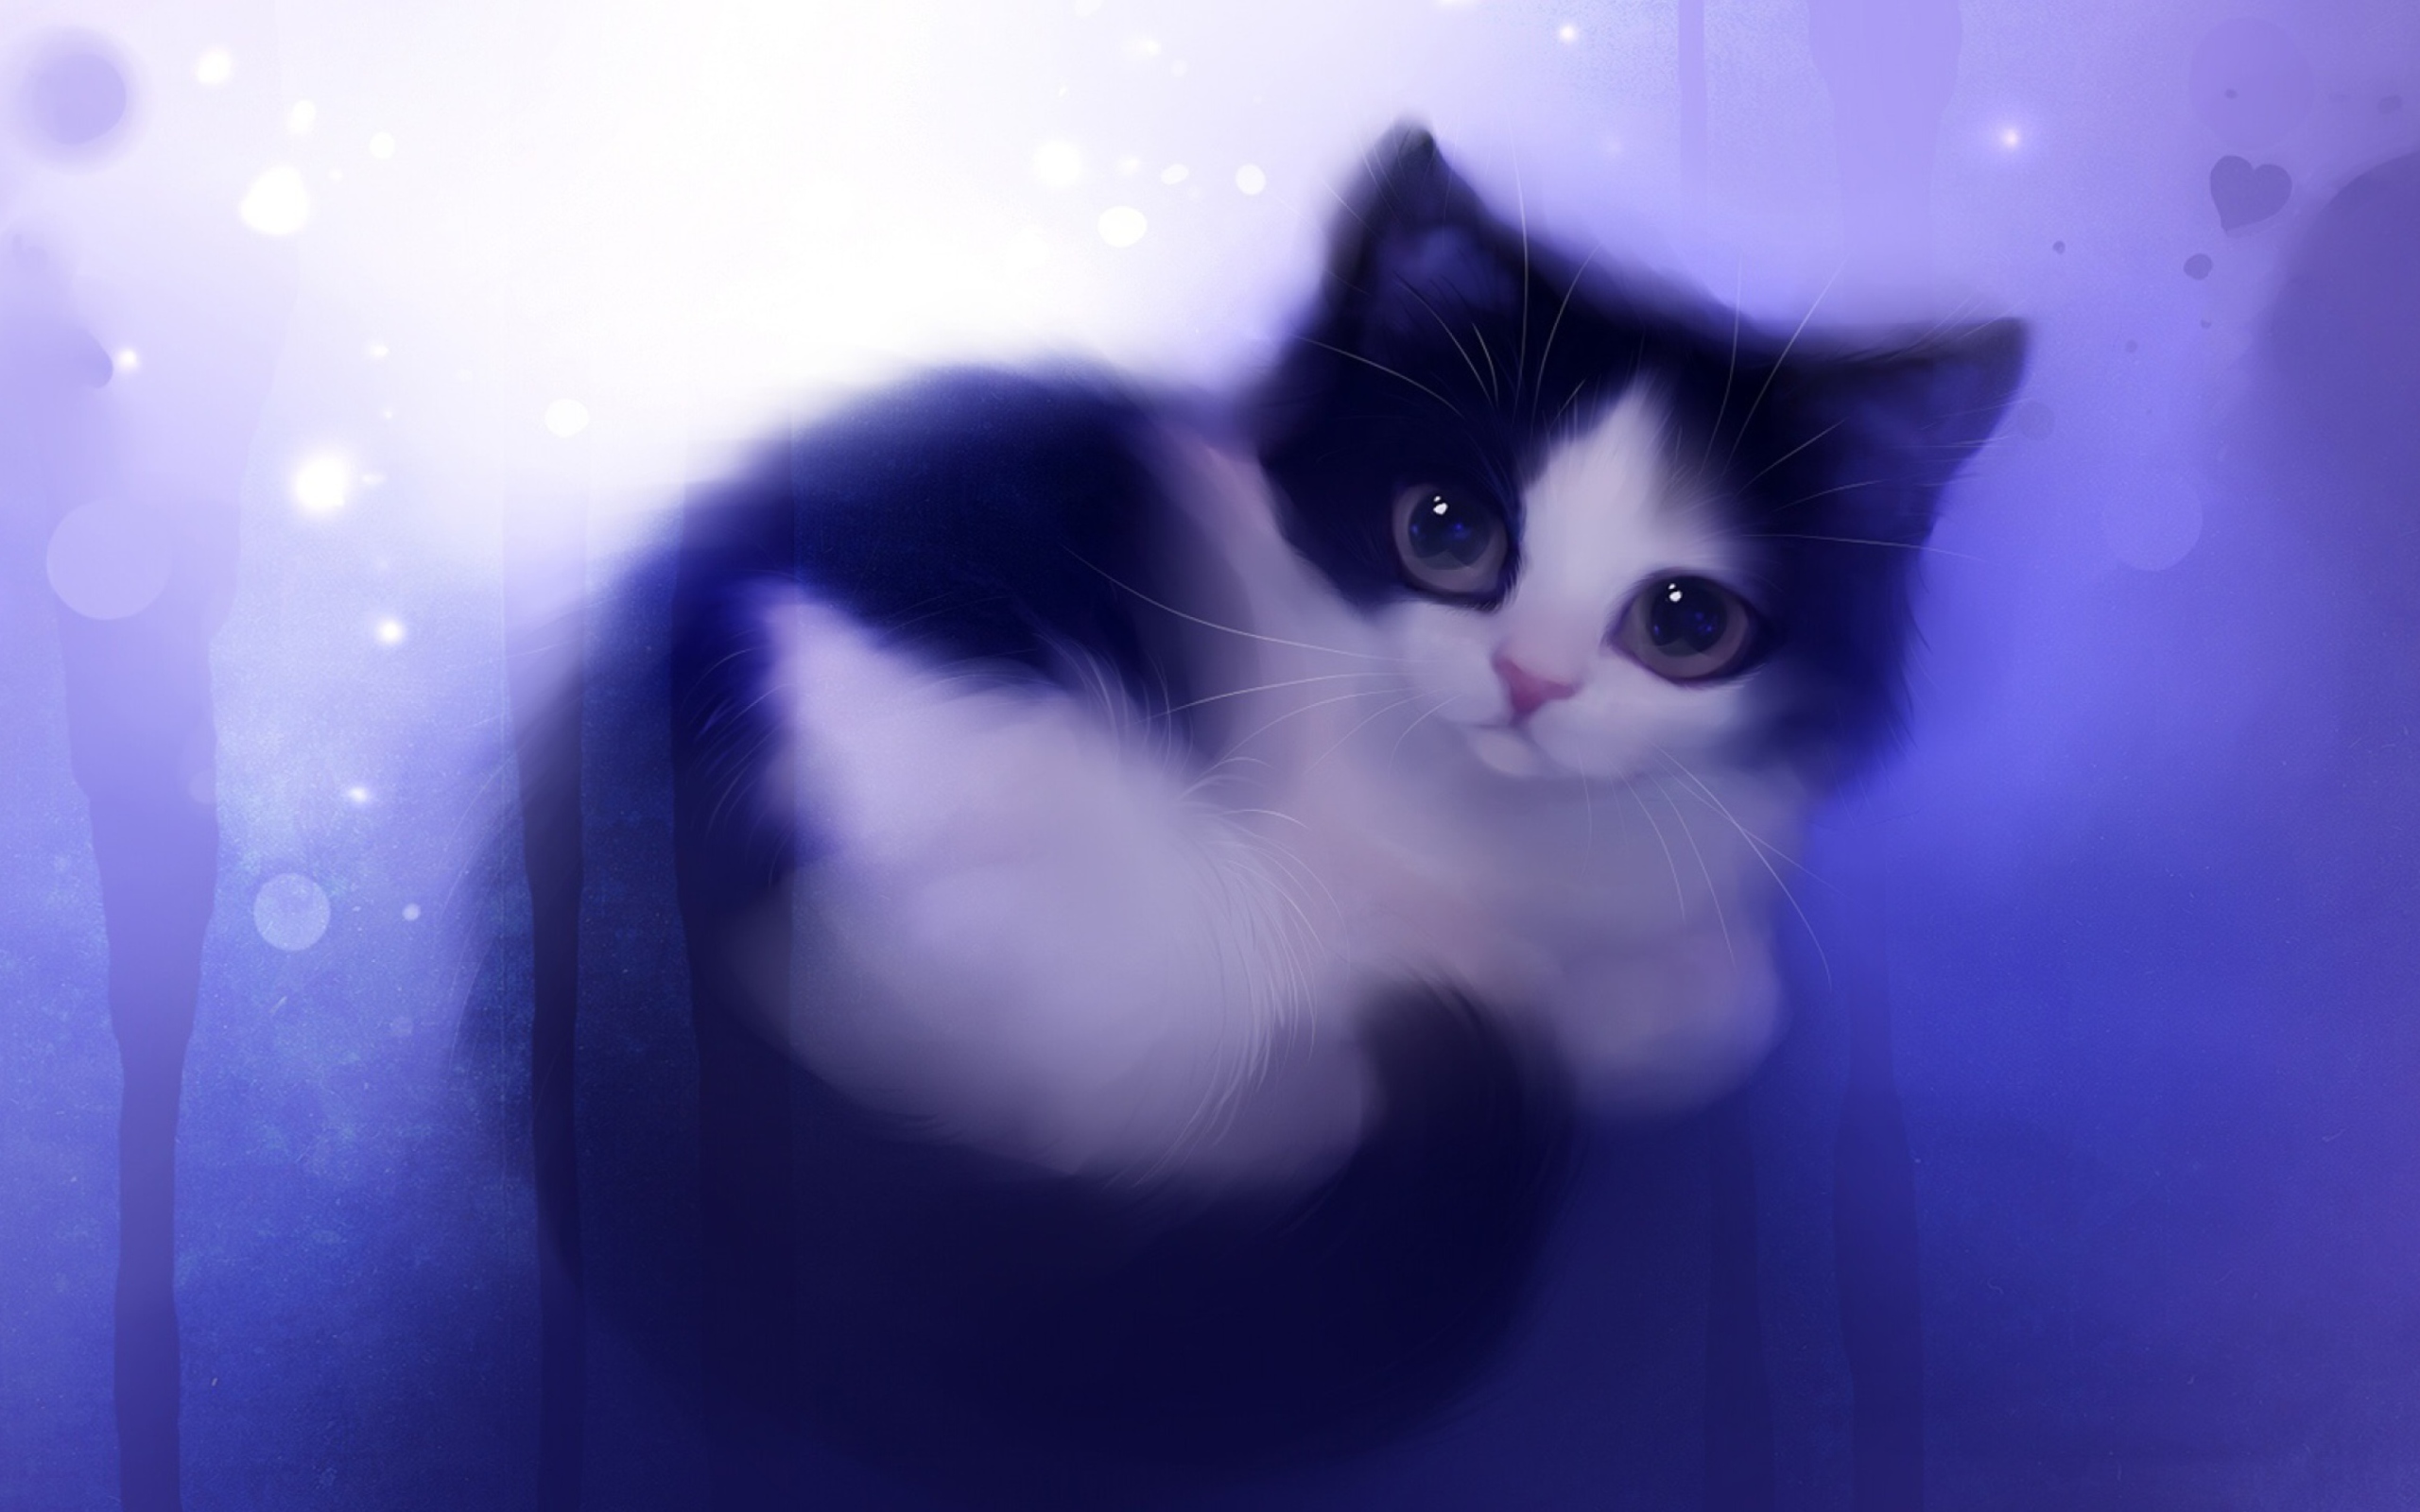 Das Cute Kitty Painting Wallpaper 2560x1600